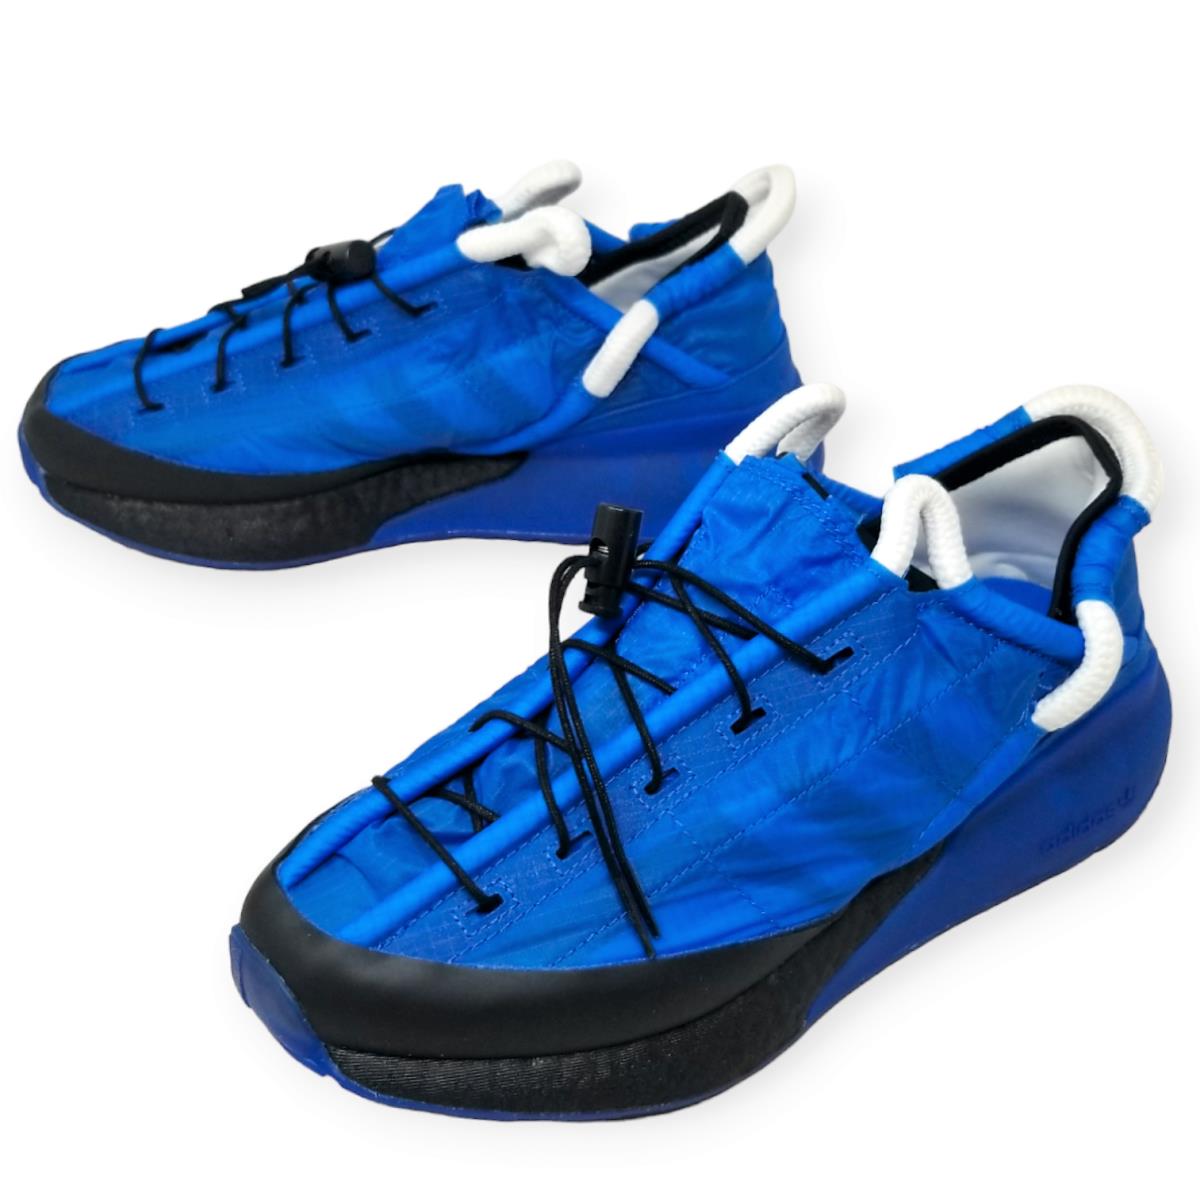 Adidas Originals X Craig Green CG ZX 2K Boost Phormar Blue - FY5717